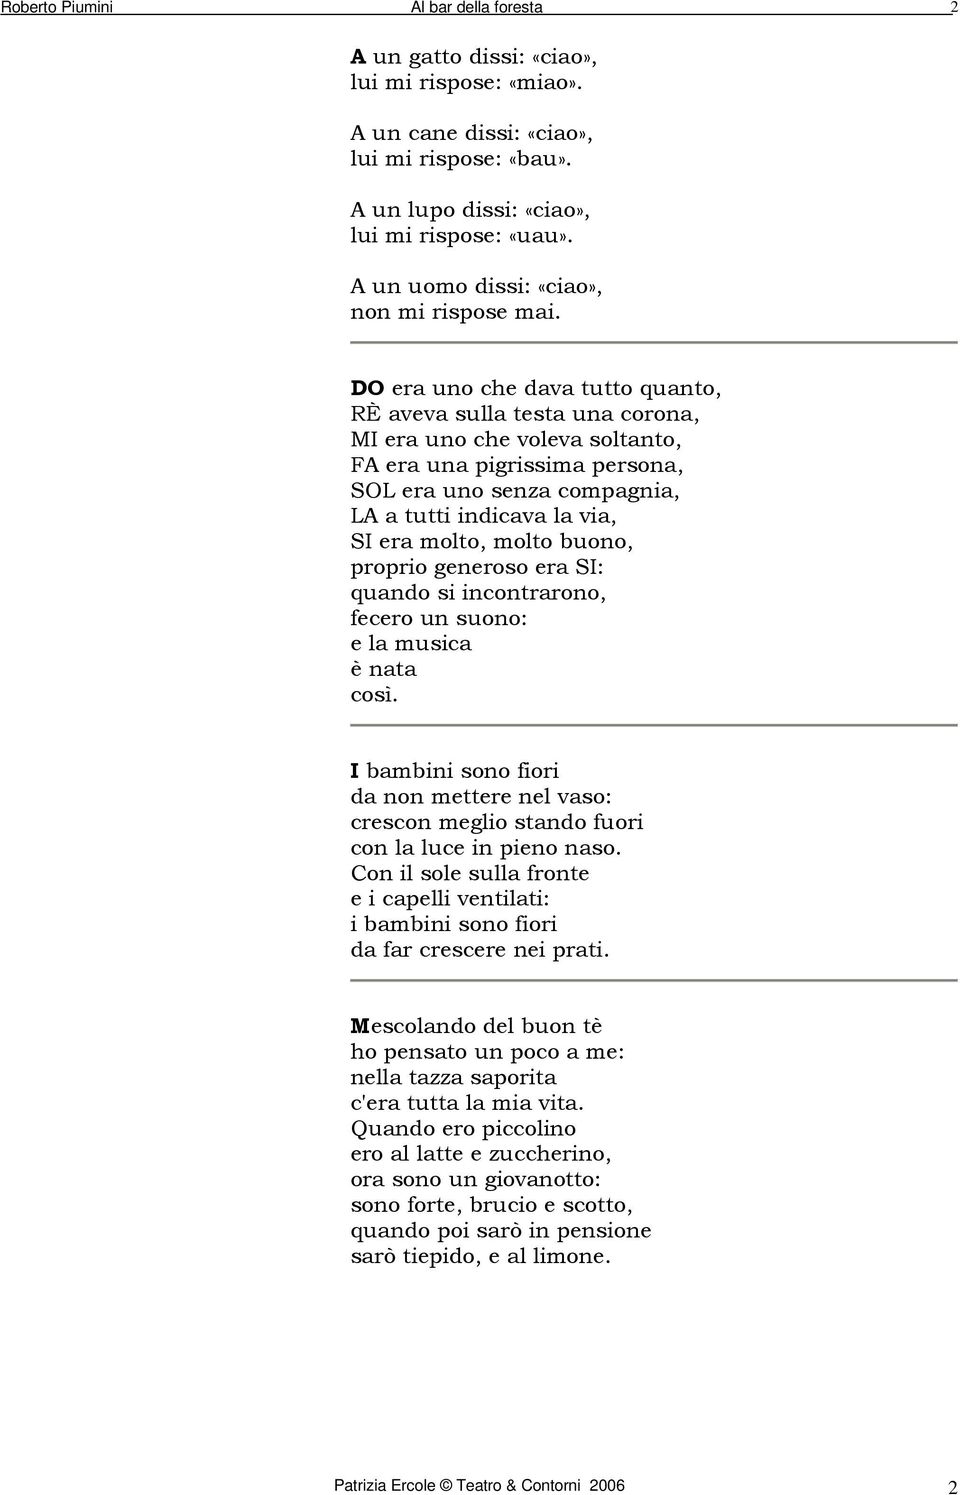 Poesie Di Natale Di Roberto Piumini.Poesie Di Roberto Piumini Pdf Free Download